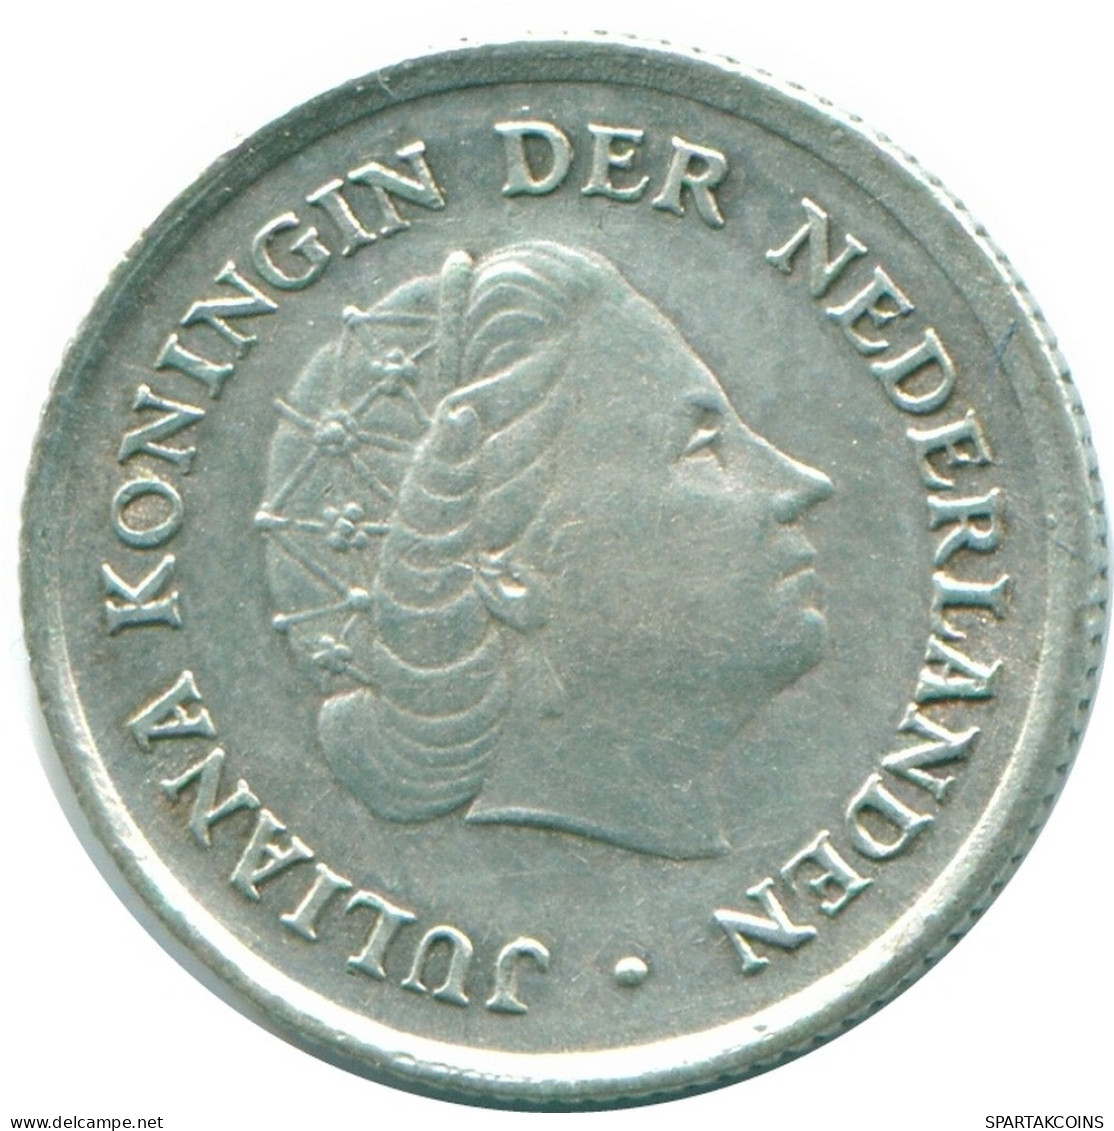 1/10 GULDEN 1962 NIEDERLÄNDISCHE ANTILLEN SILBER Koloniale Münze #NL12364.3.D.A - Nederlandse Antillen